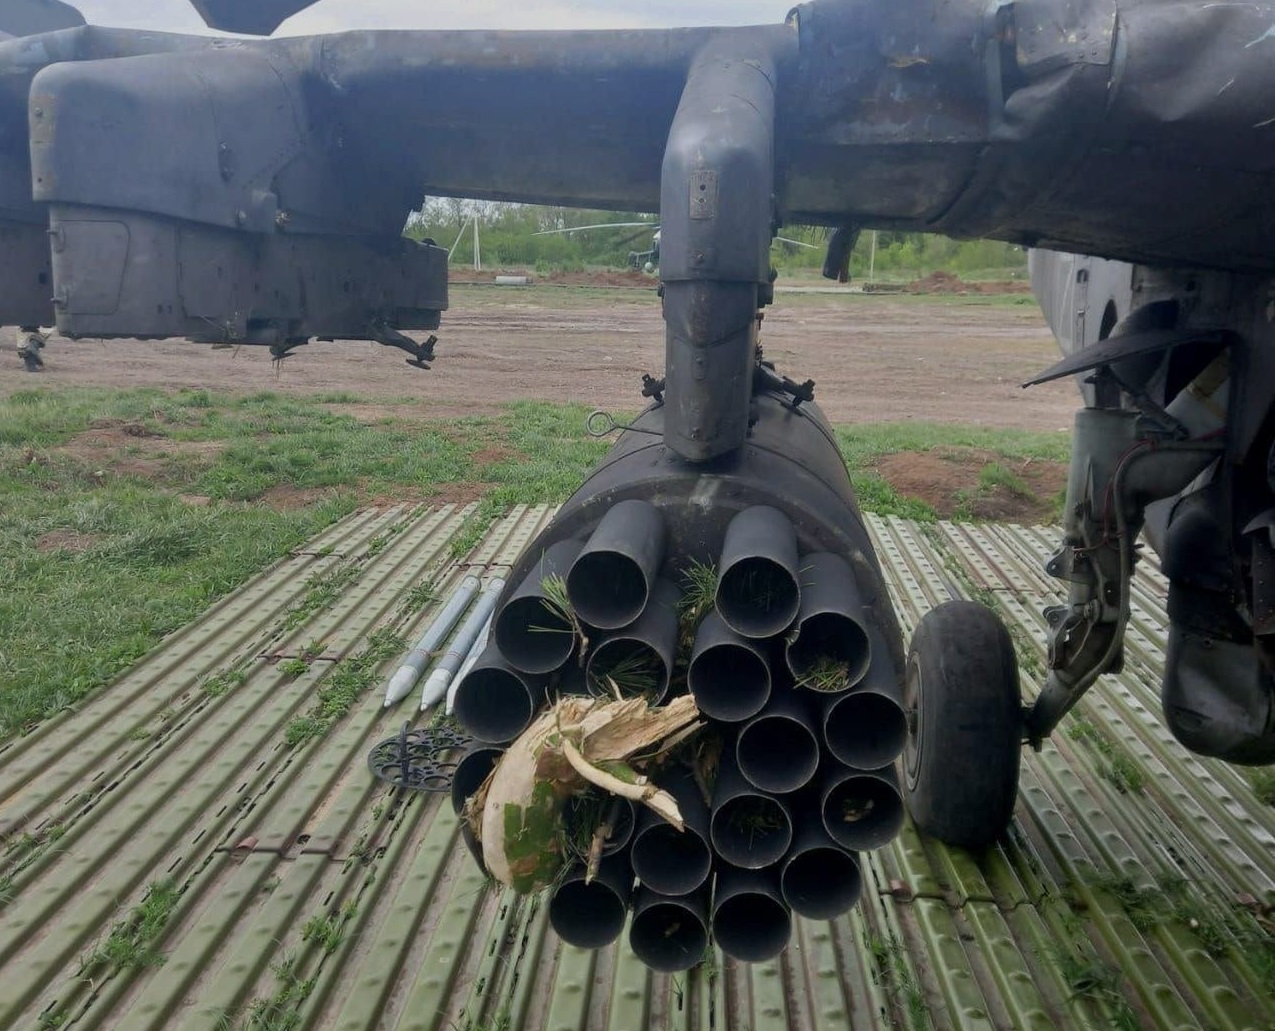 Rosyjski śmigłowiec Ka-52 z osłoną przeciwrakietową przegrał z ukraińską choinką, która uszkodziła jej kompleks obronny i blok startowy